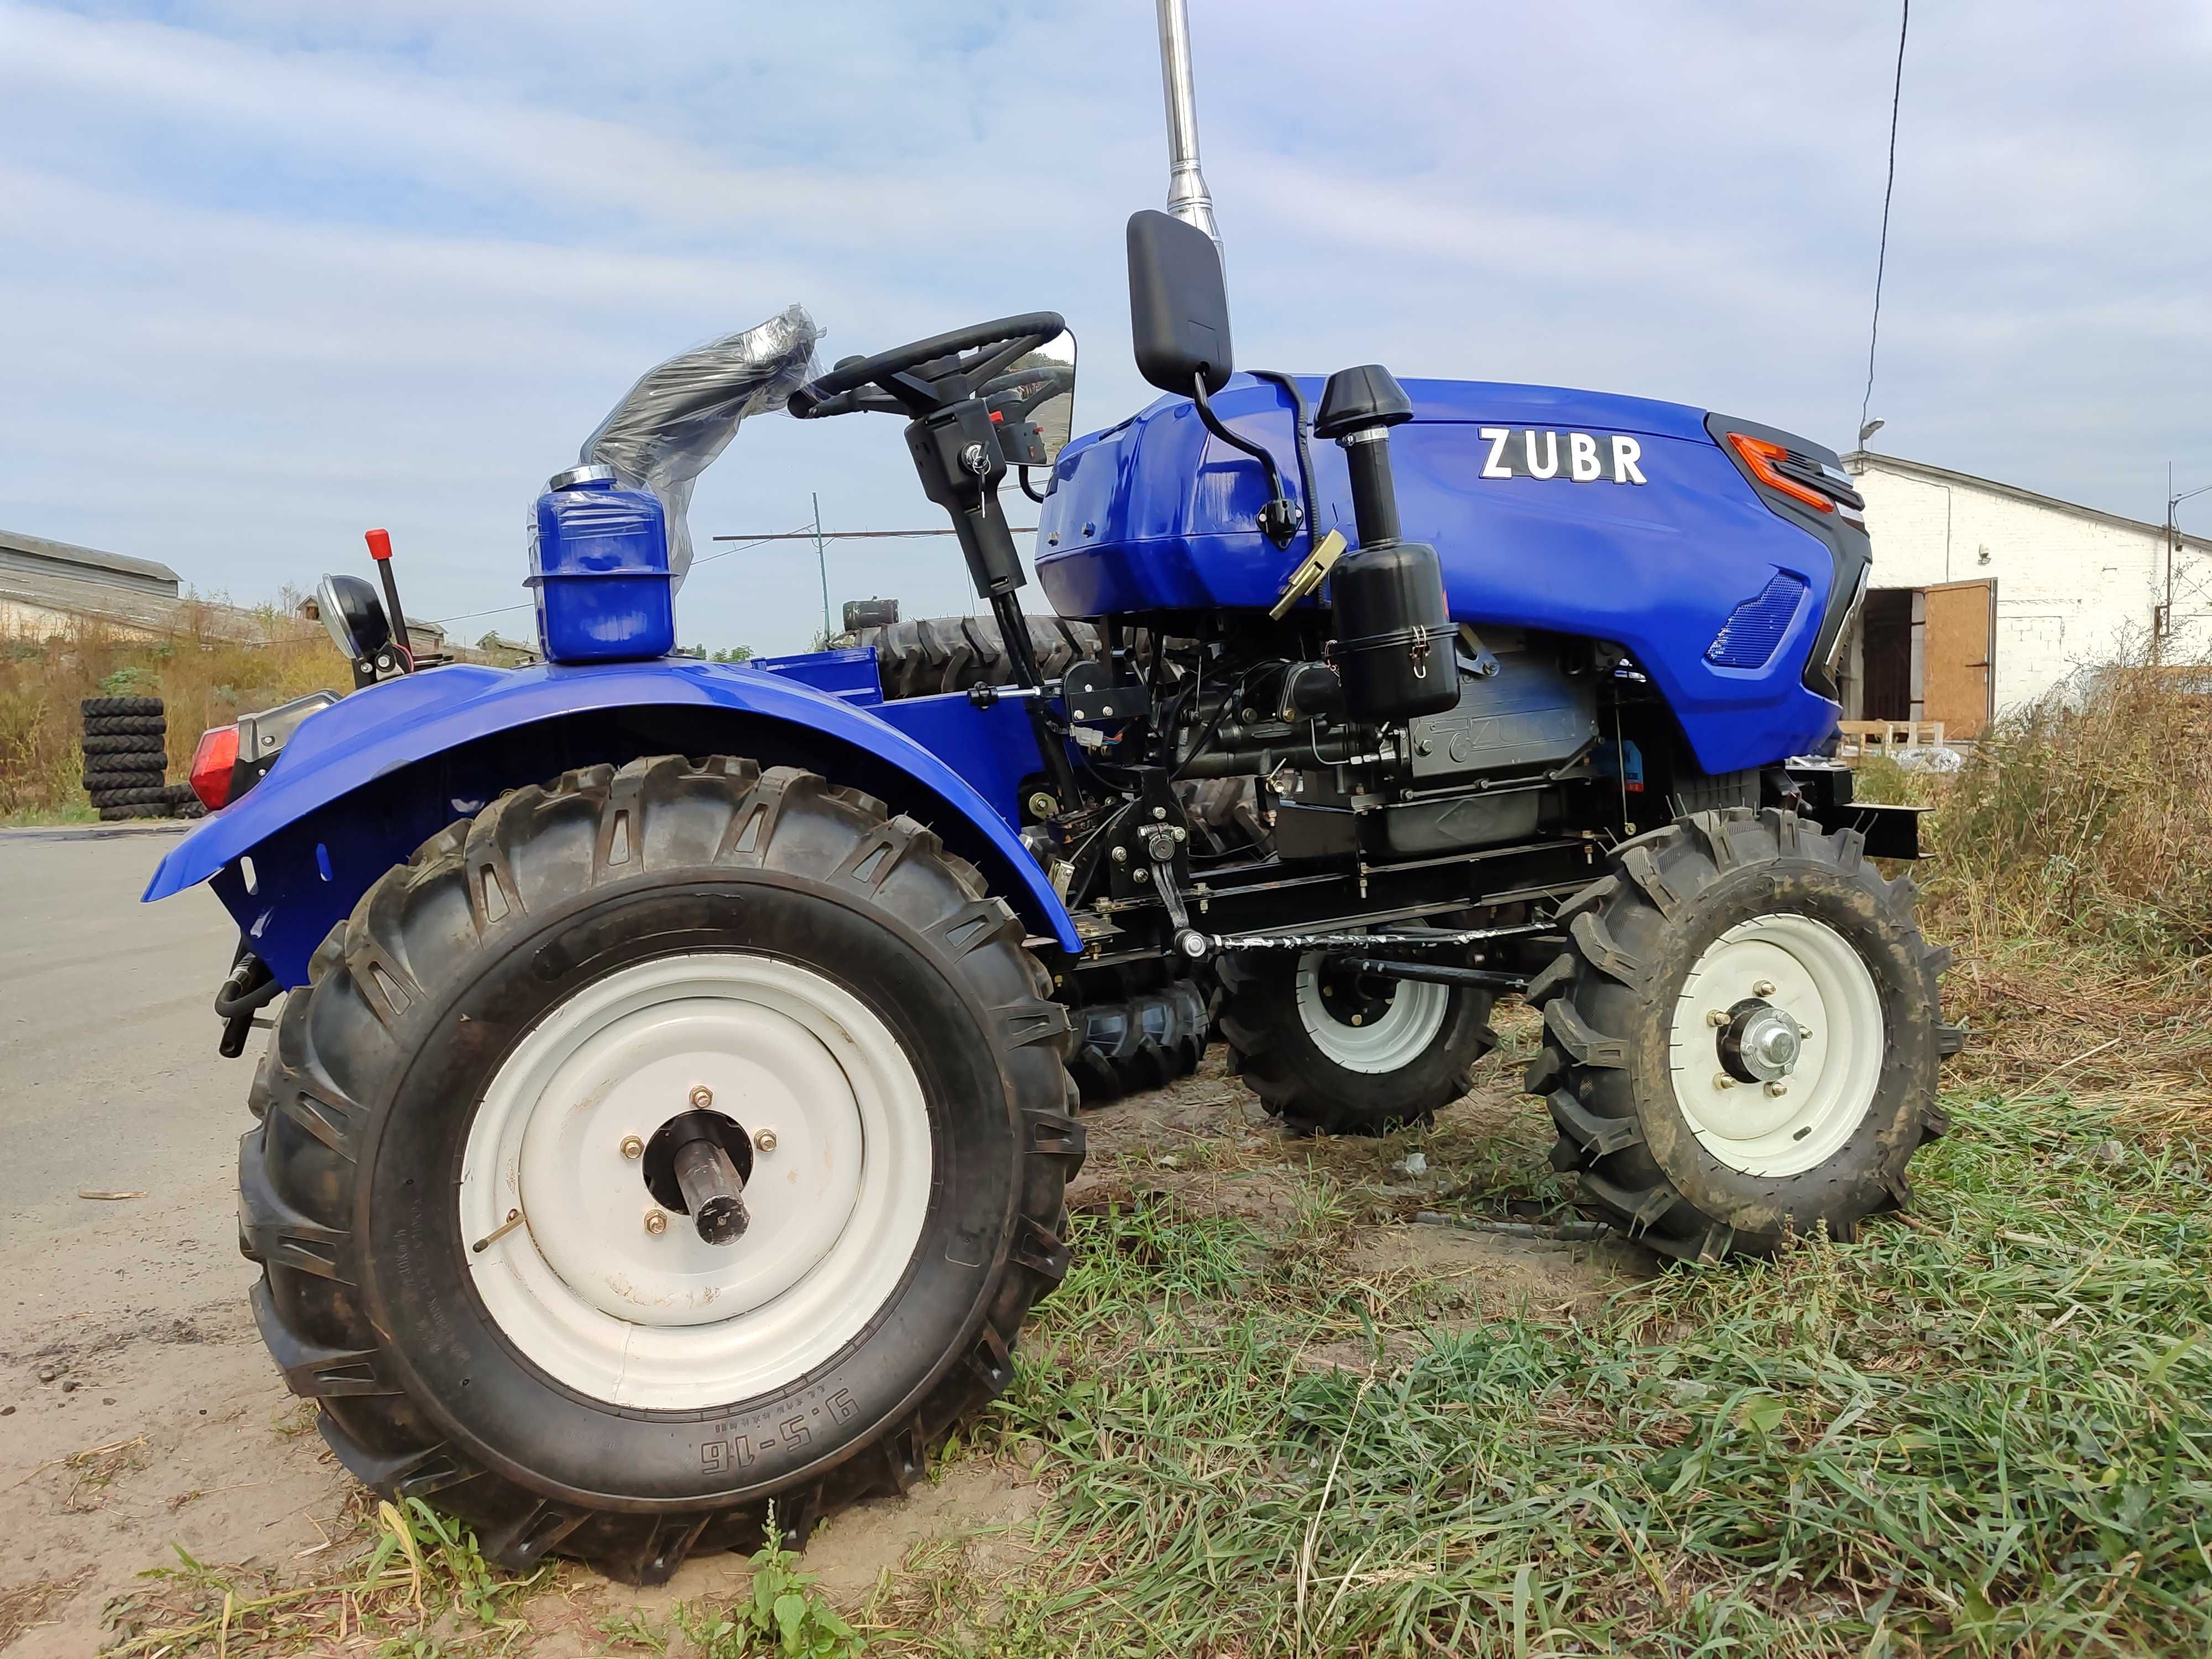 Трактор Зубр 250 XL Zubr фреза и плуг в подарок